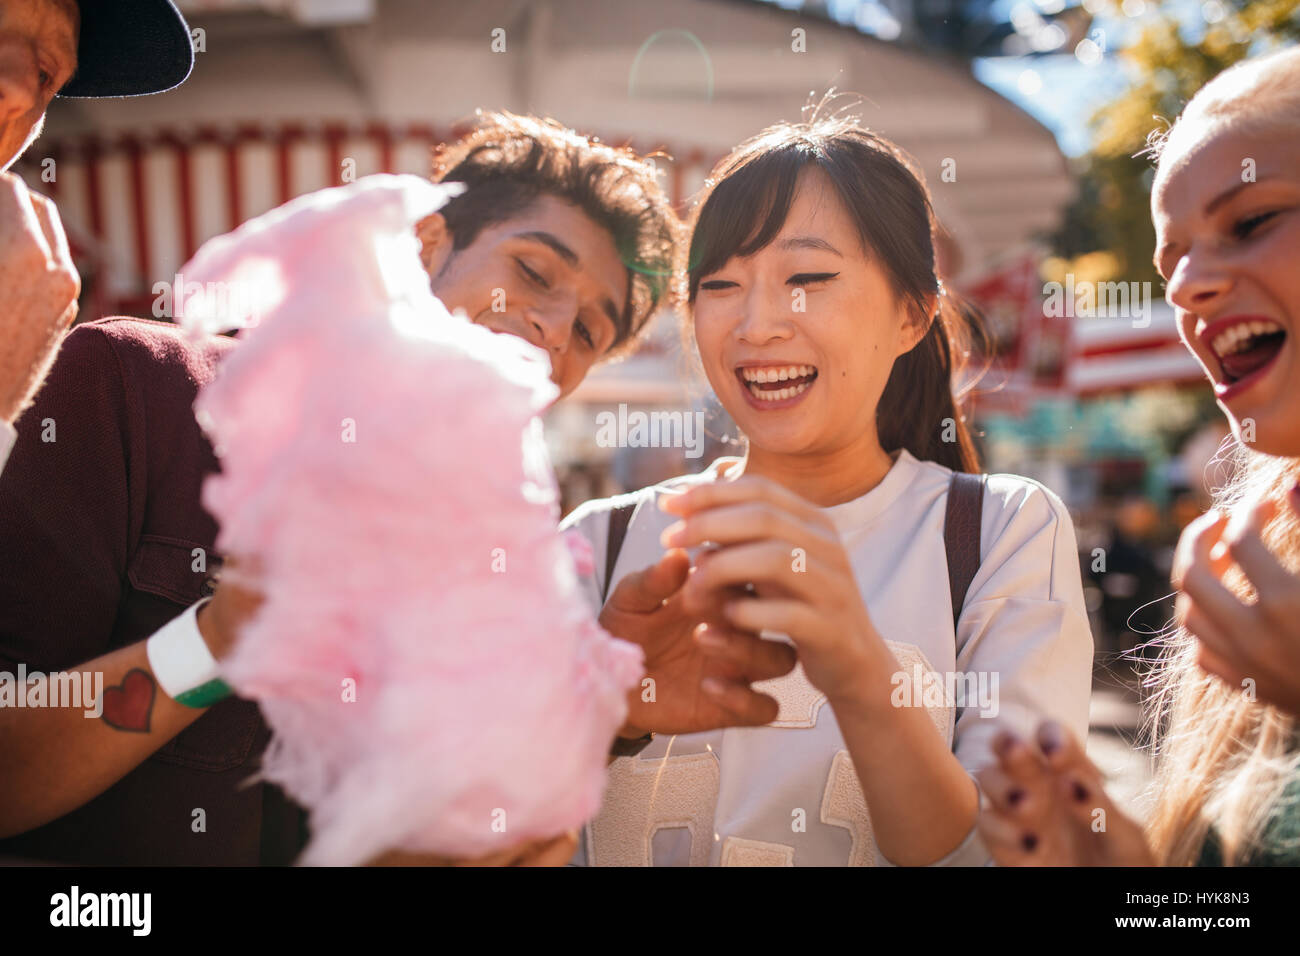 Gruppe von Freunden essen Zuckerwatte im Freizeitpark. Lächelnde junge Menschen teilen Zuckerwatte im Freien. Stockfoto